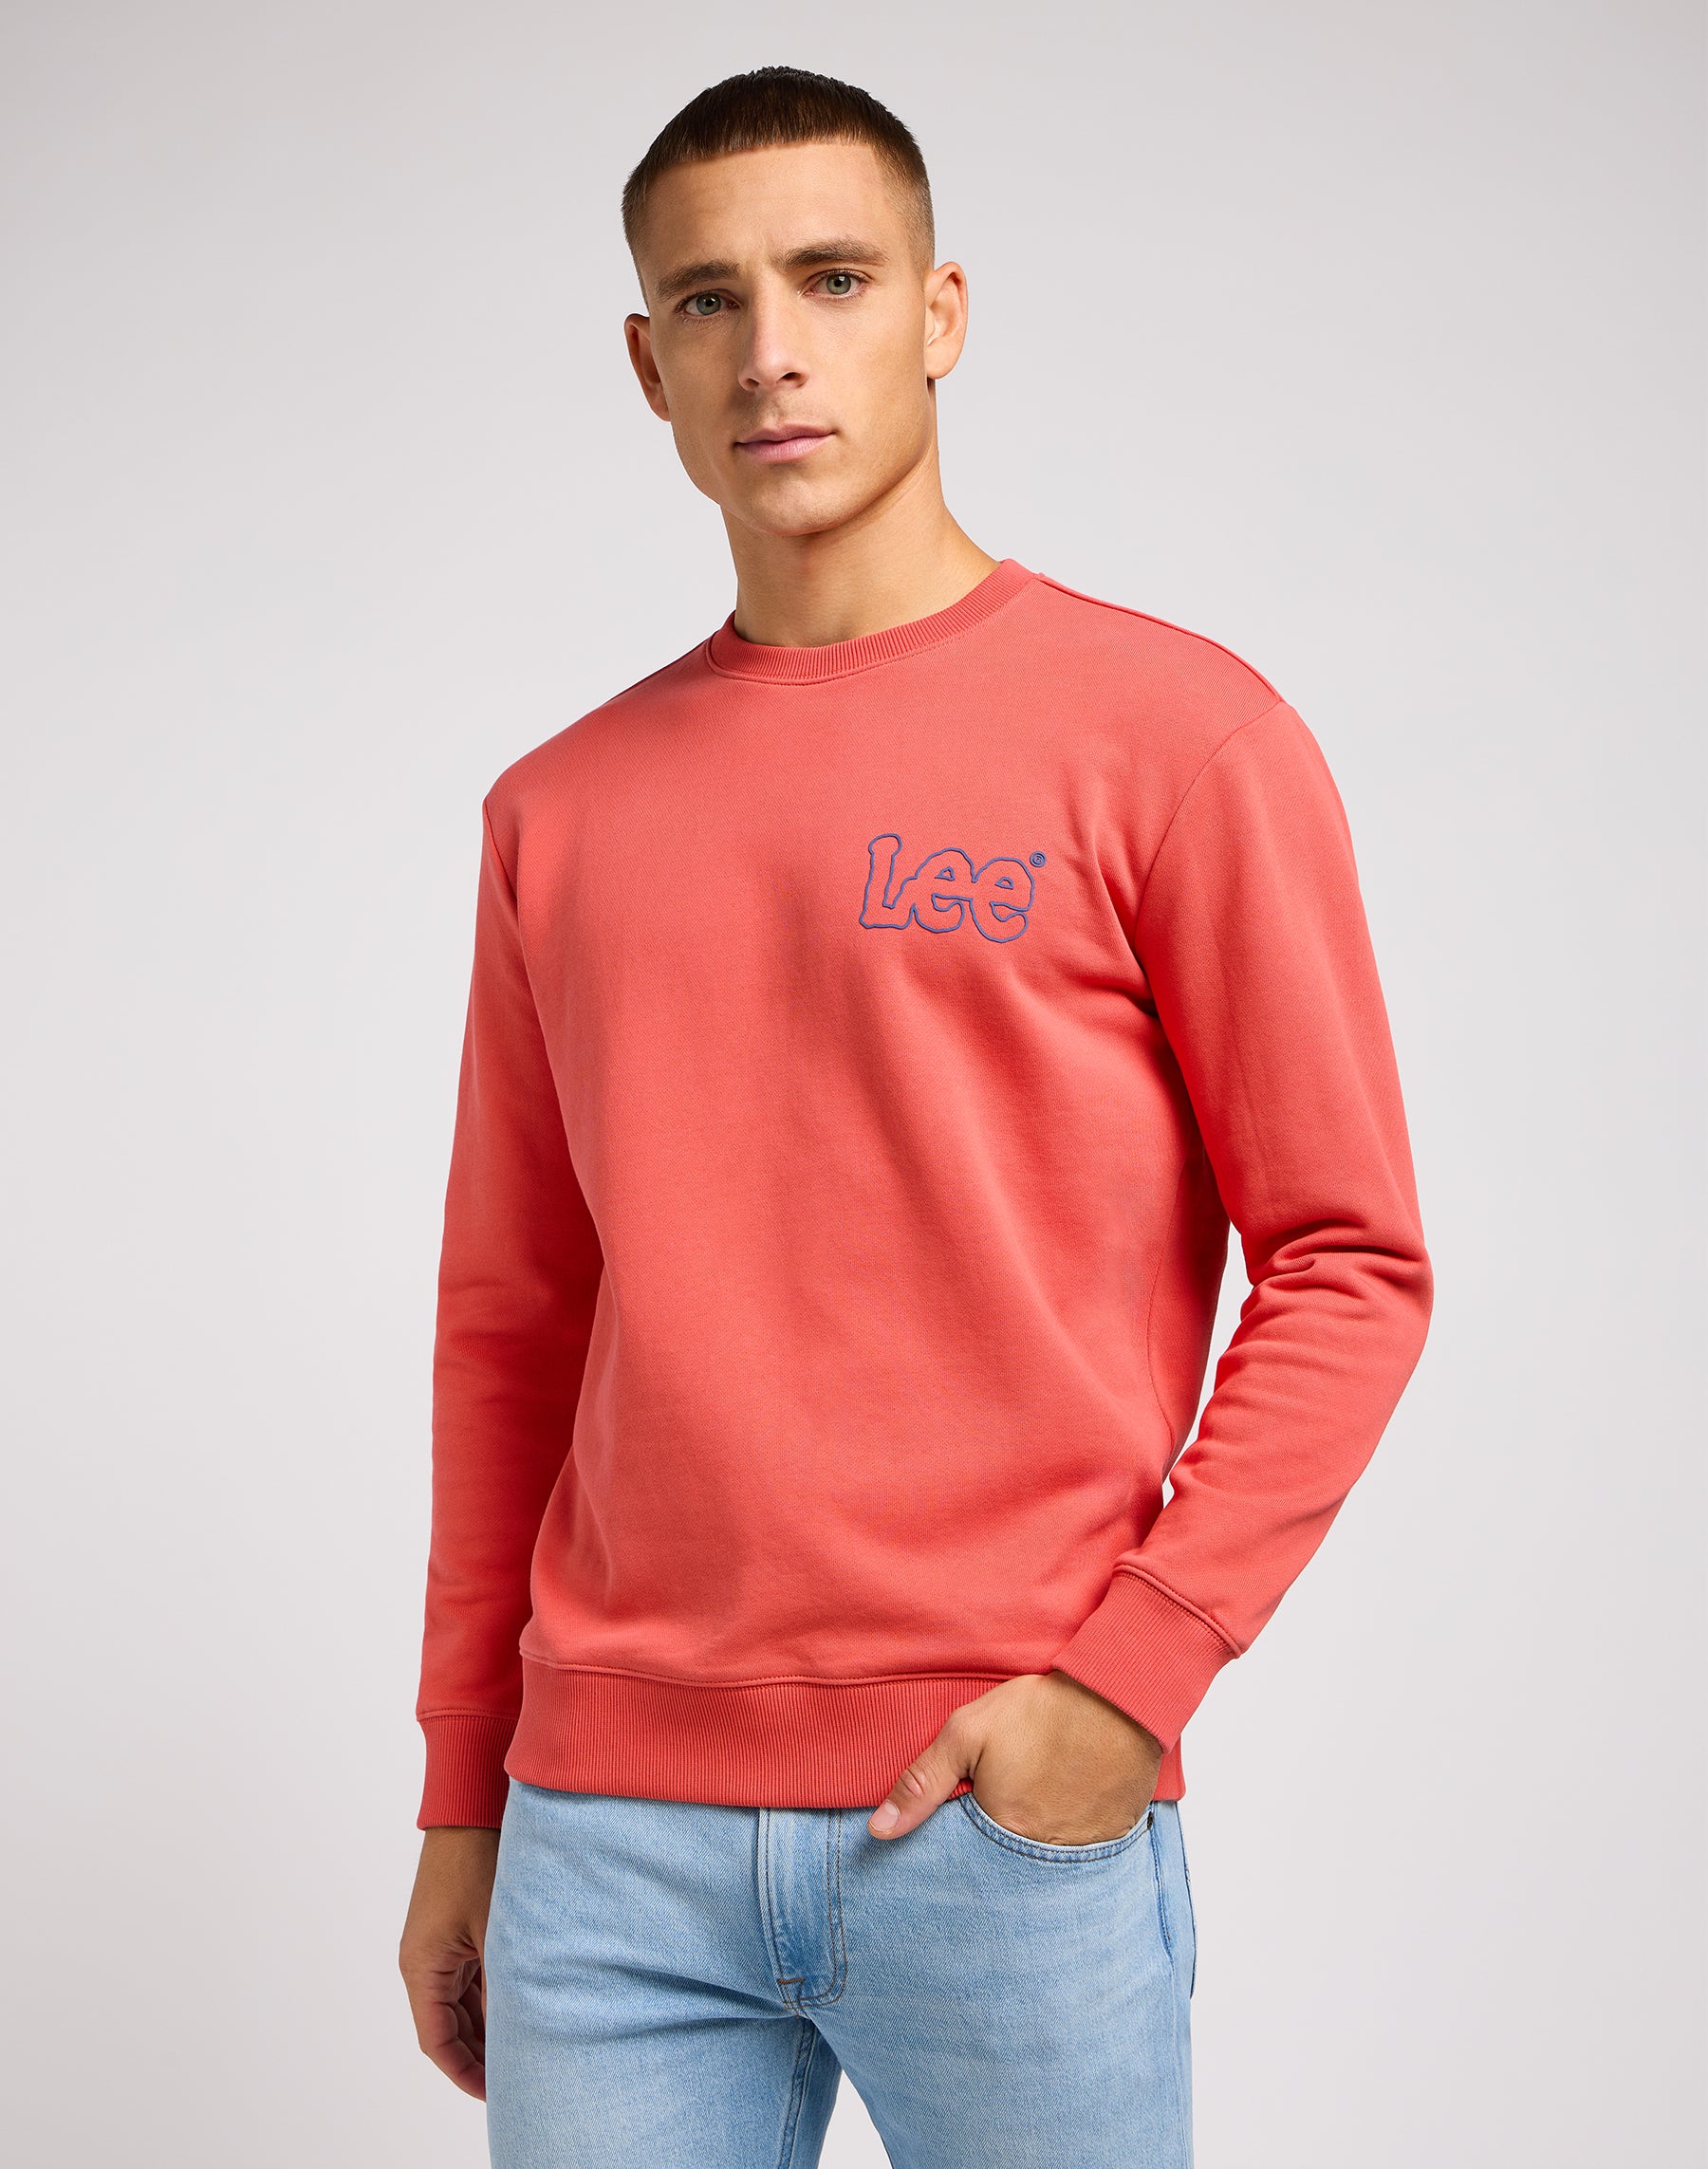 Wobbly Lee Sweater in Poppy Sweatshirts Lee   